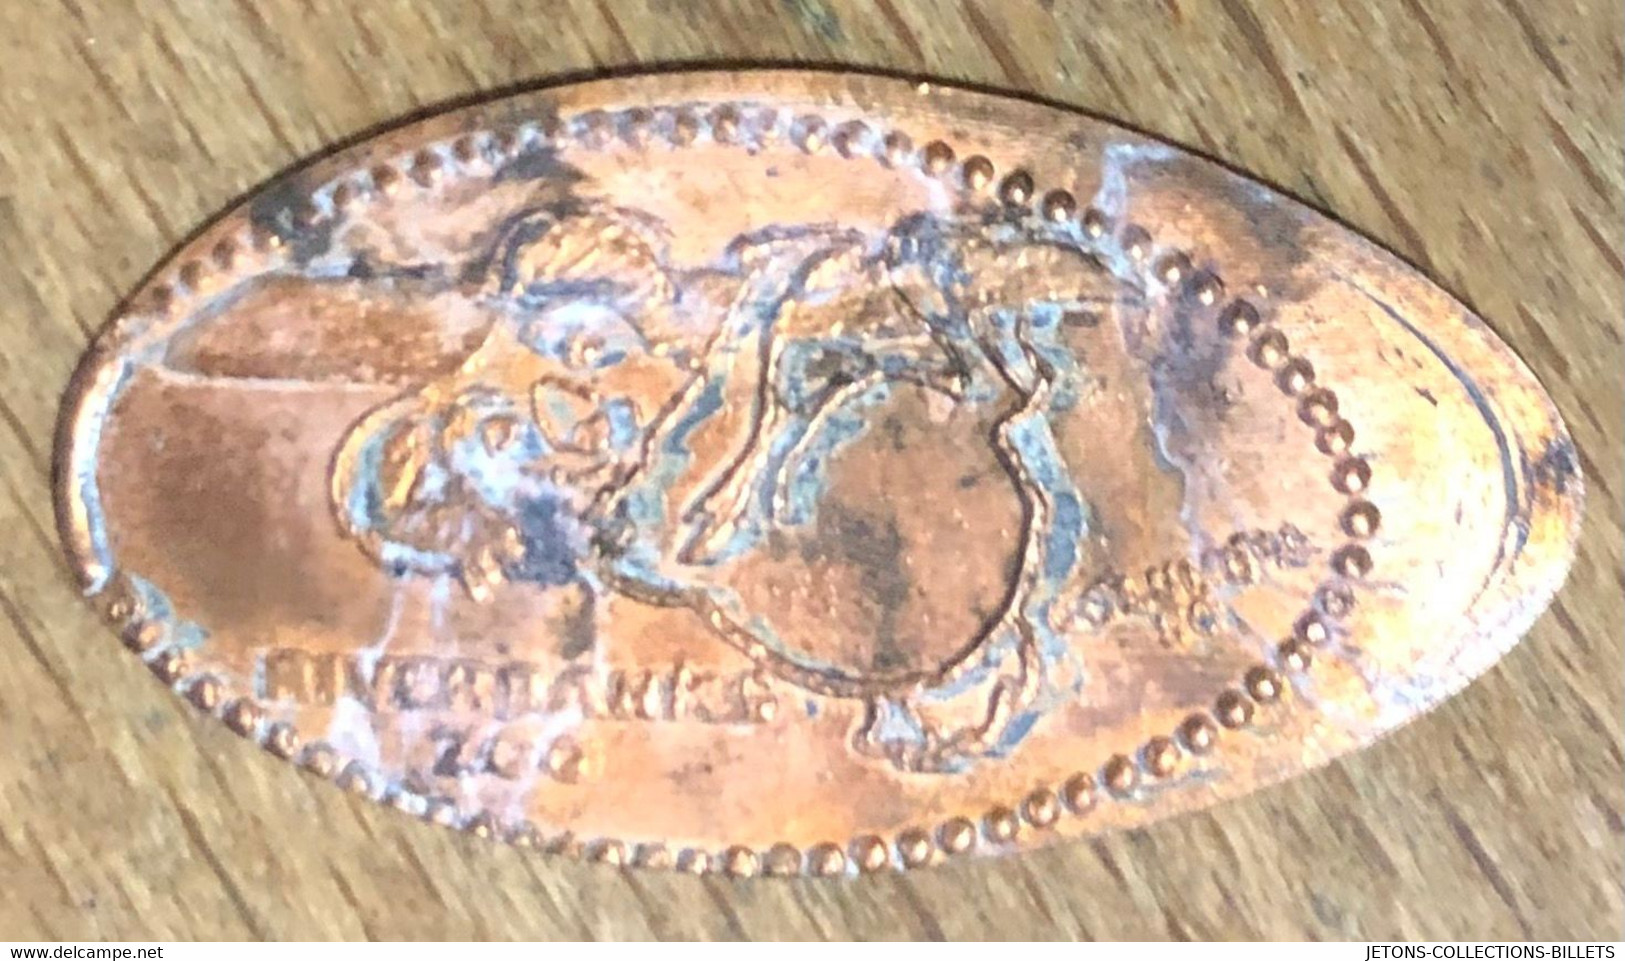 ÉTATS-UNIS USA RIVERBANKS ZOO COLUMBIA SC KOALA PIÈCE ÉCRASÉE PENNY ELONGATED COIN MEDAILLE TOURISTIQUE MEDALS TOKENS - Souvenirmunten (elongated Coins)